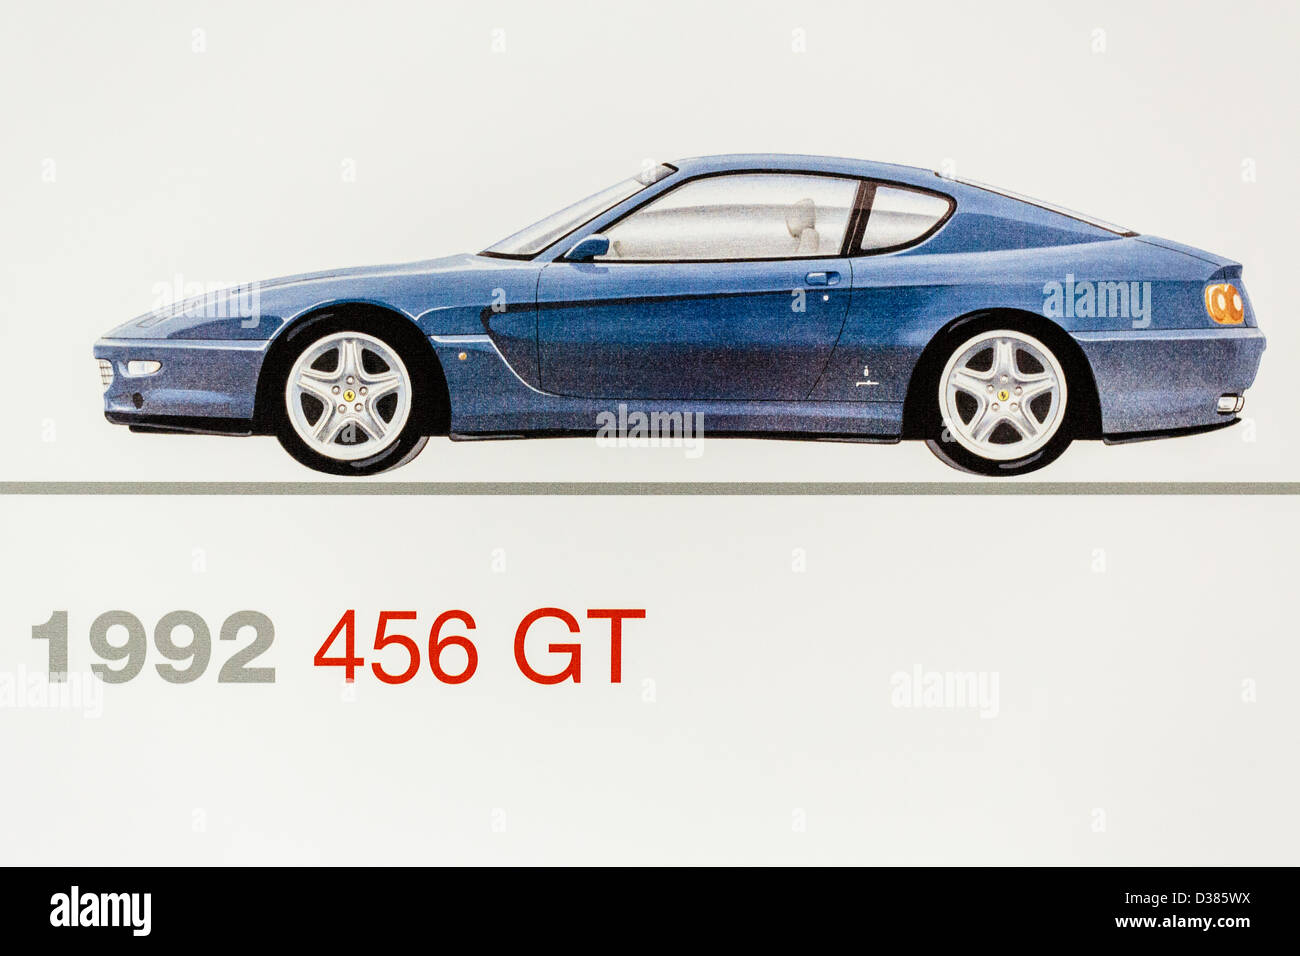 Graphic representation of a 1992 Ferrari 456 GT, Ferrari Museum, Maranello, Italy Stock Photo